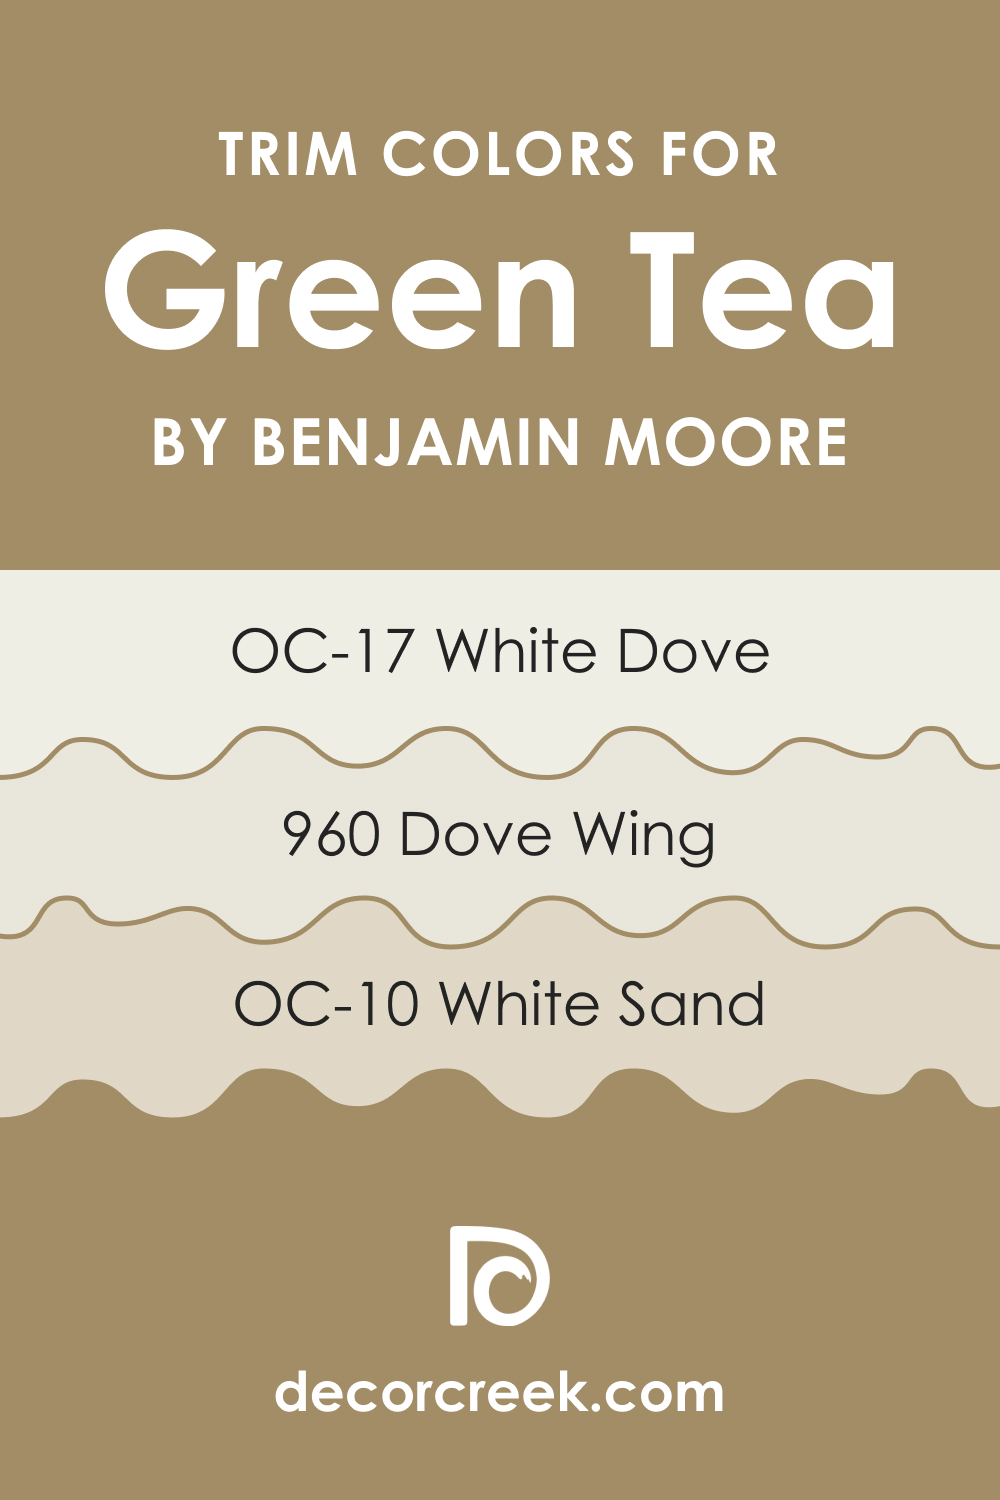 Trim Colors of Green Tea 236